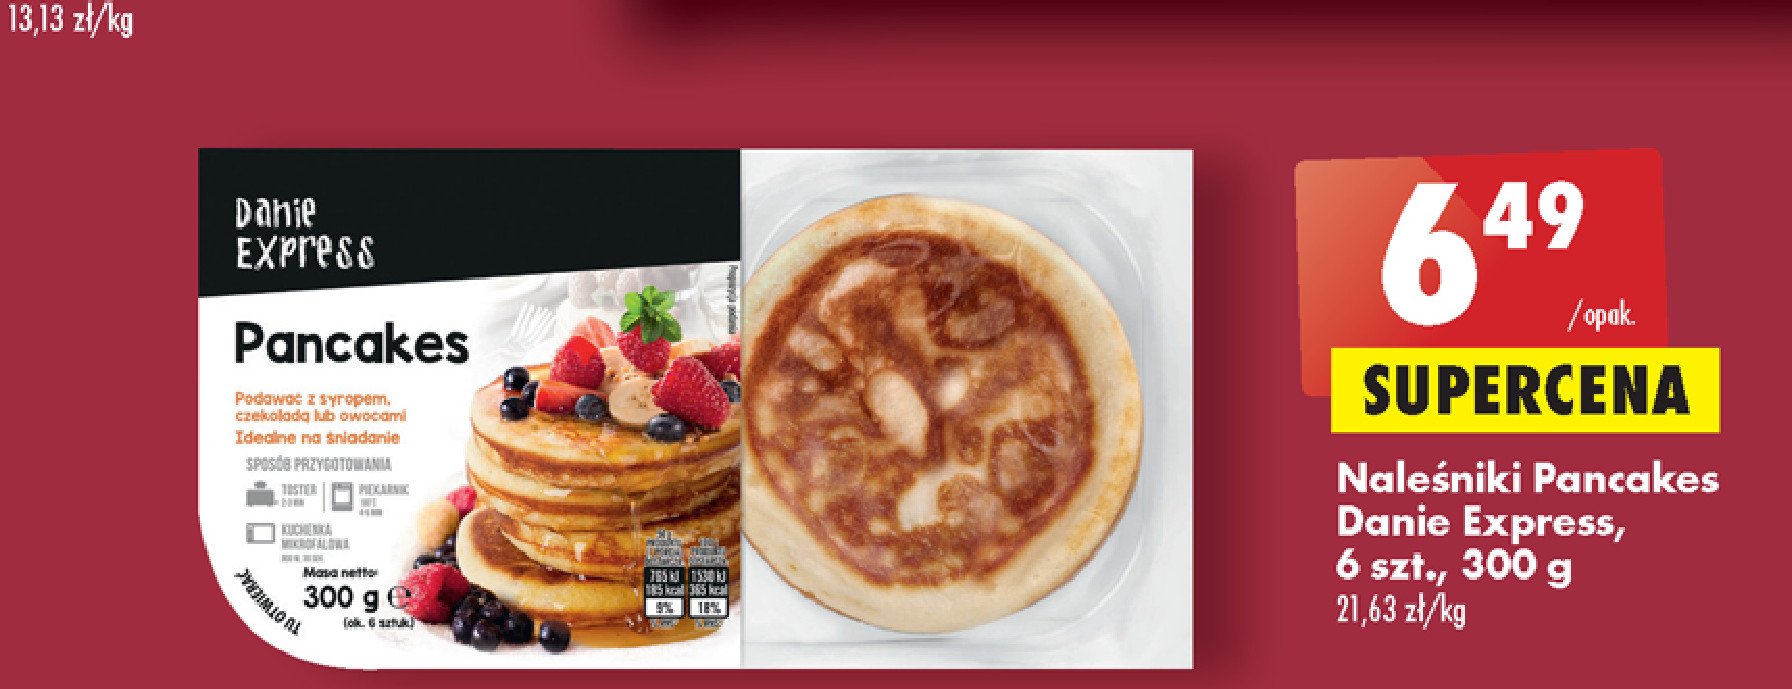 Pancakes Danie express promocje